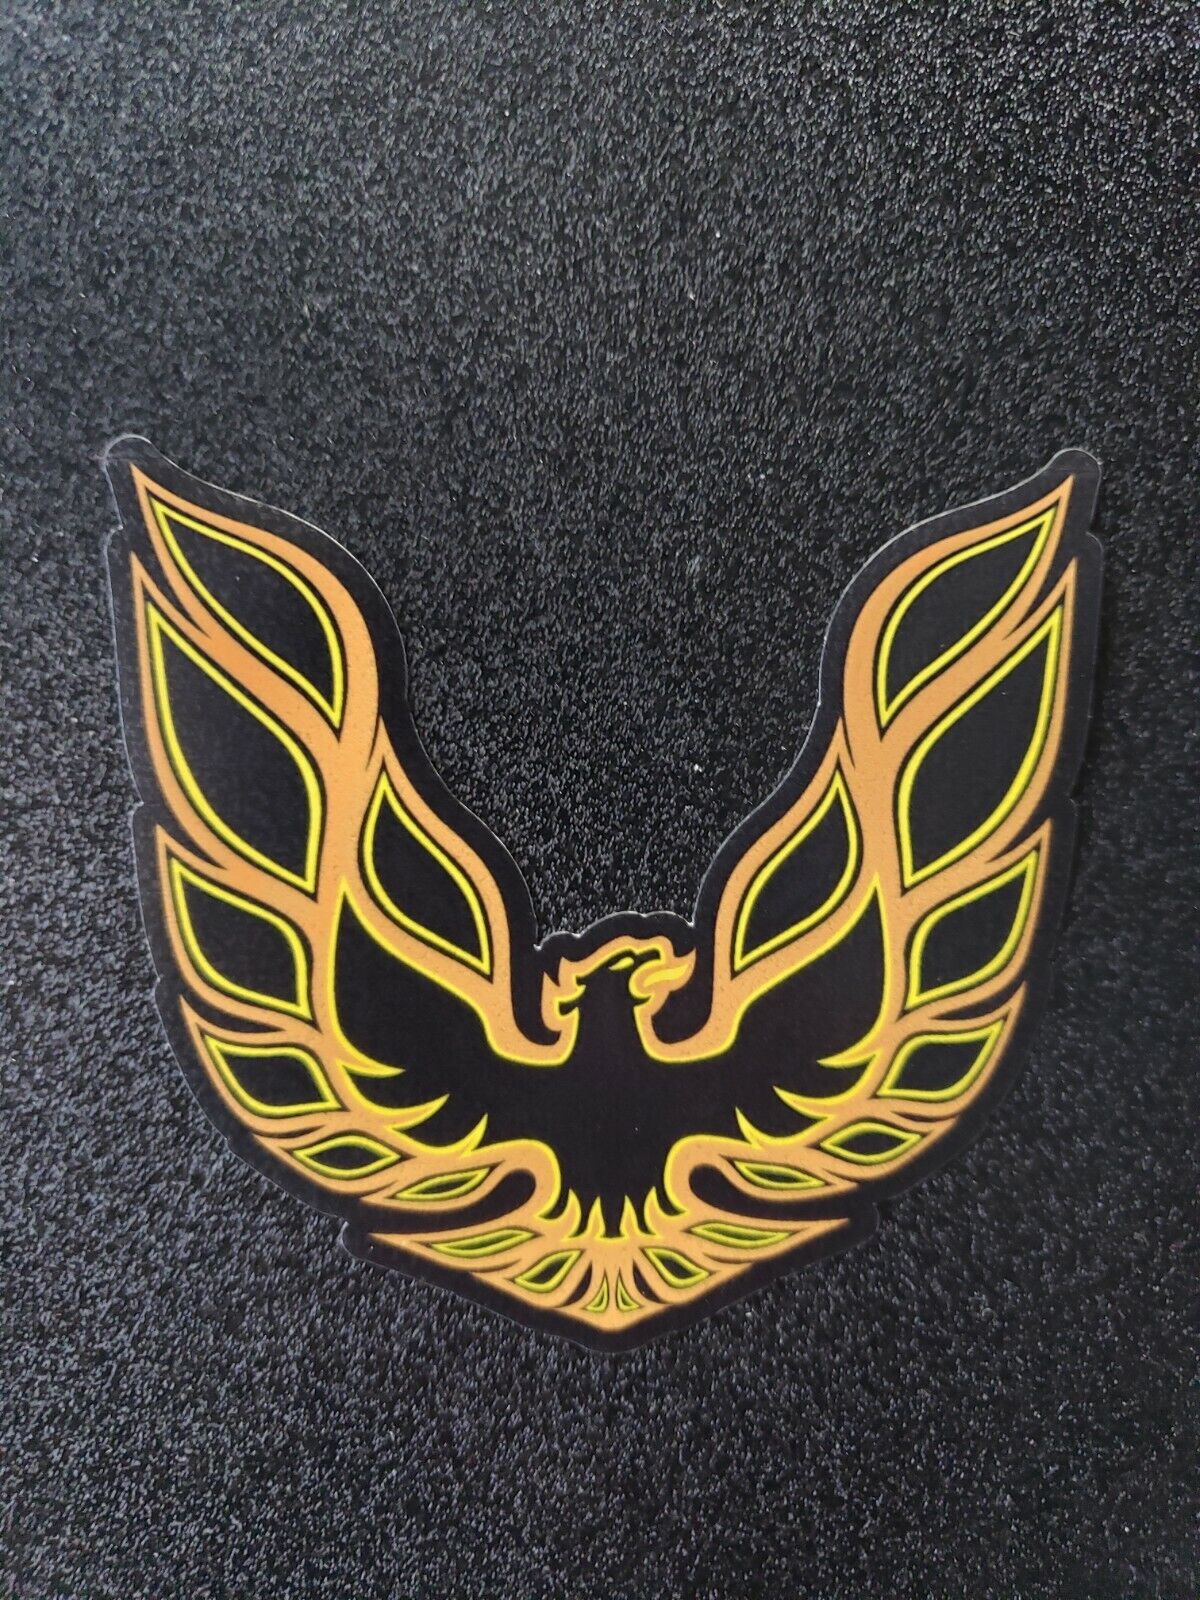 Trans Am Firebird Pontiac Bird Decal Sticker Vinyl. GOLD